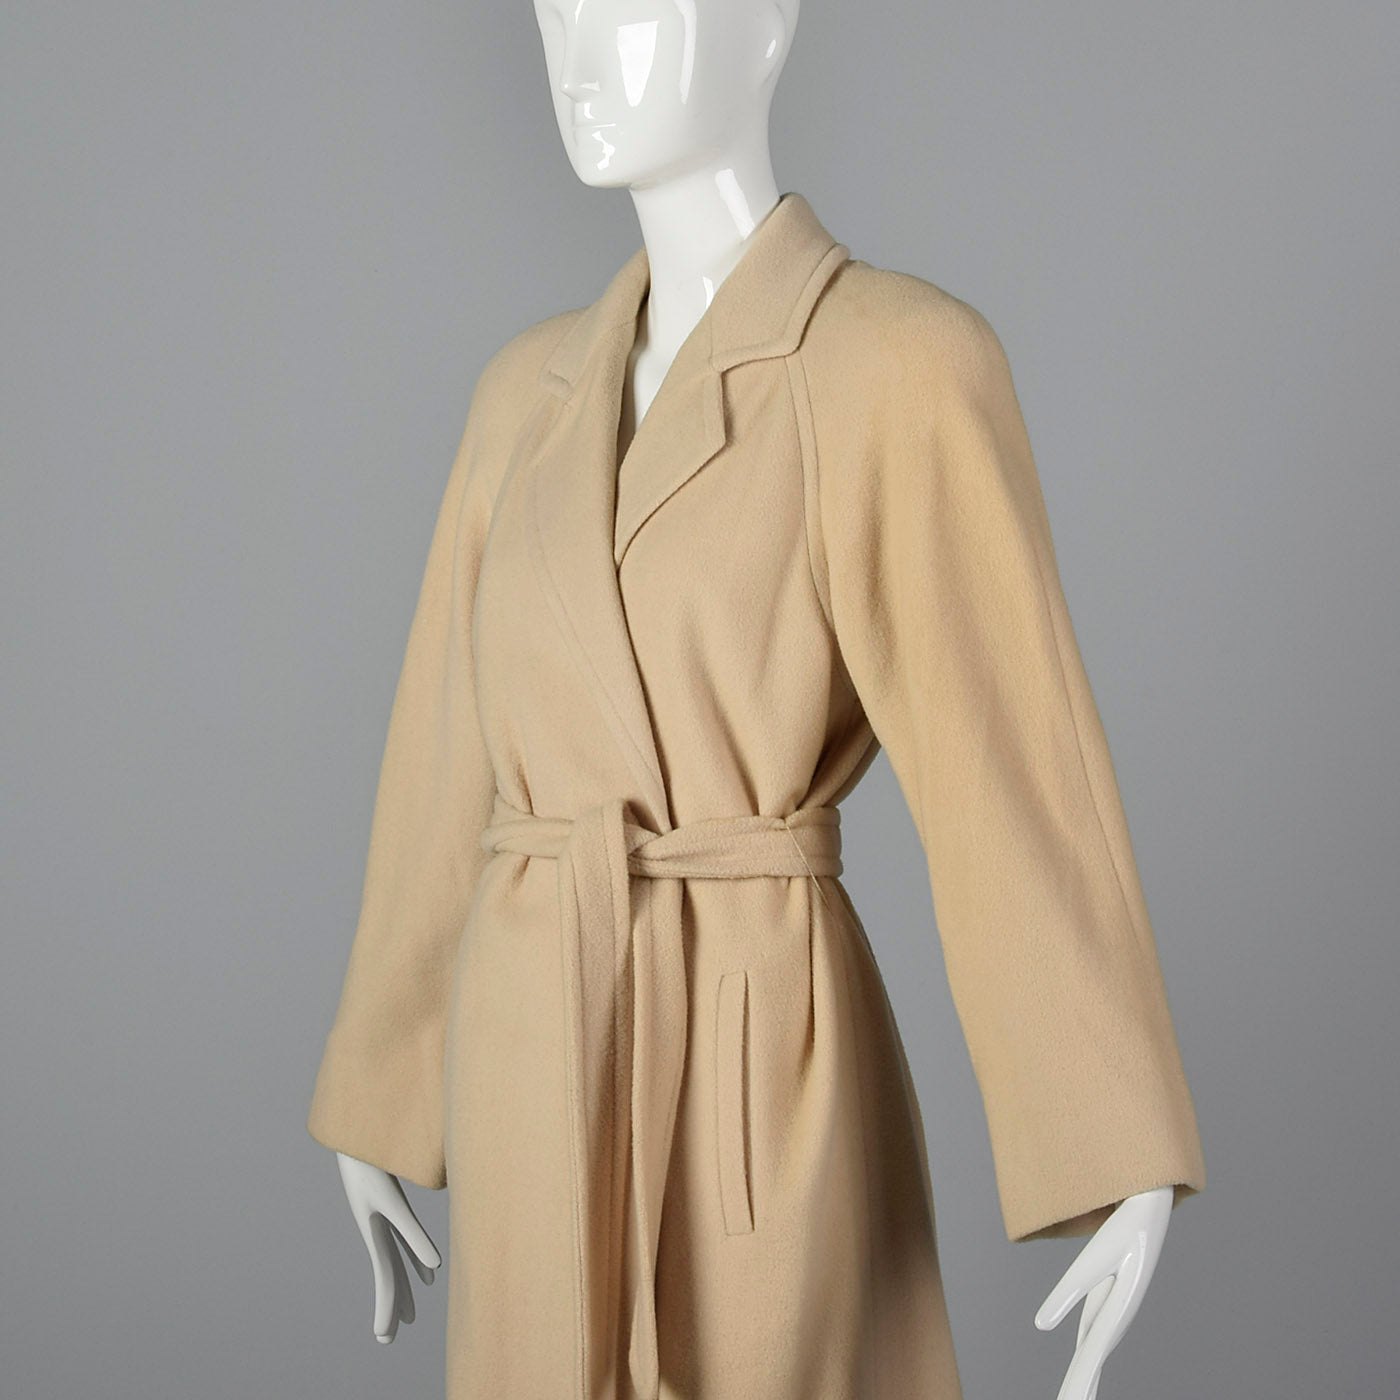 Medium I. Magnin 1980s Cream Cashmere Wrap Coat